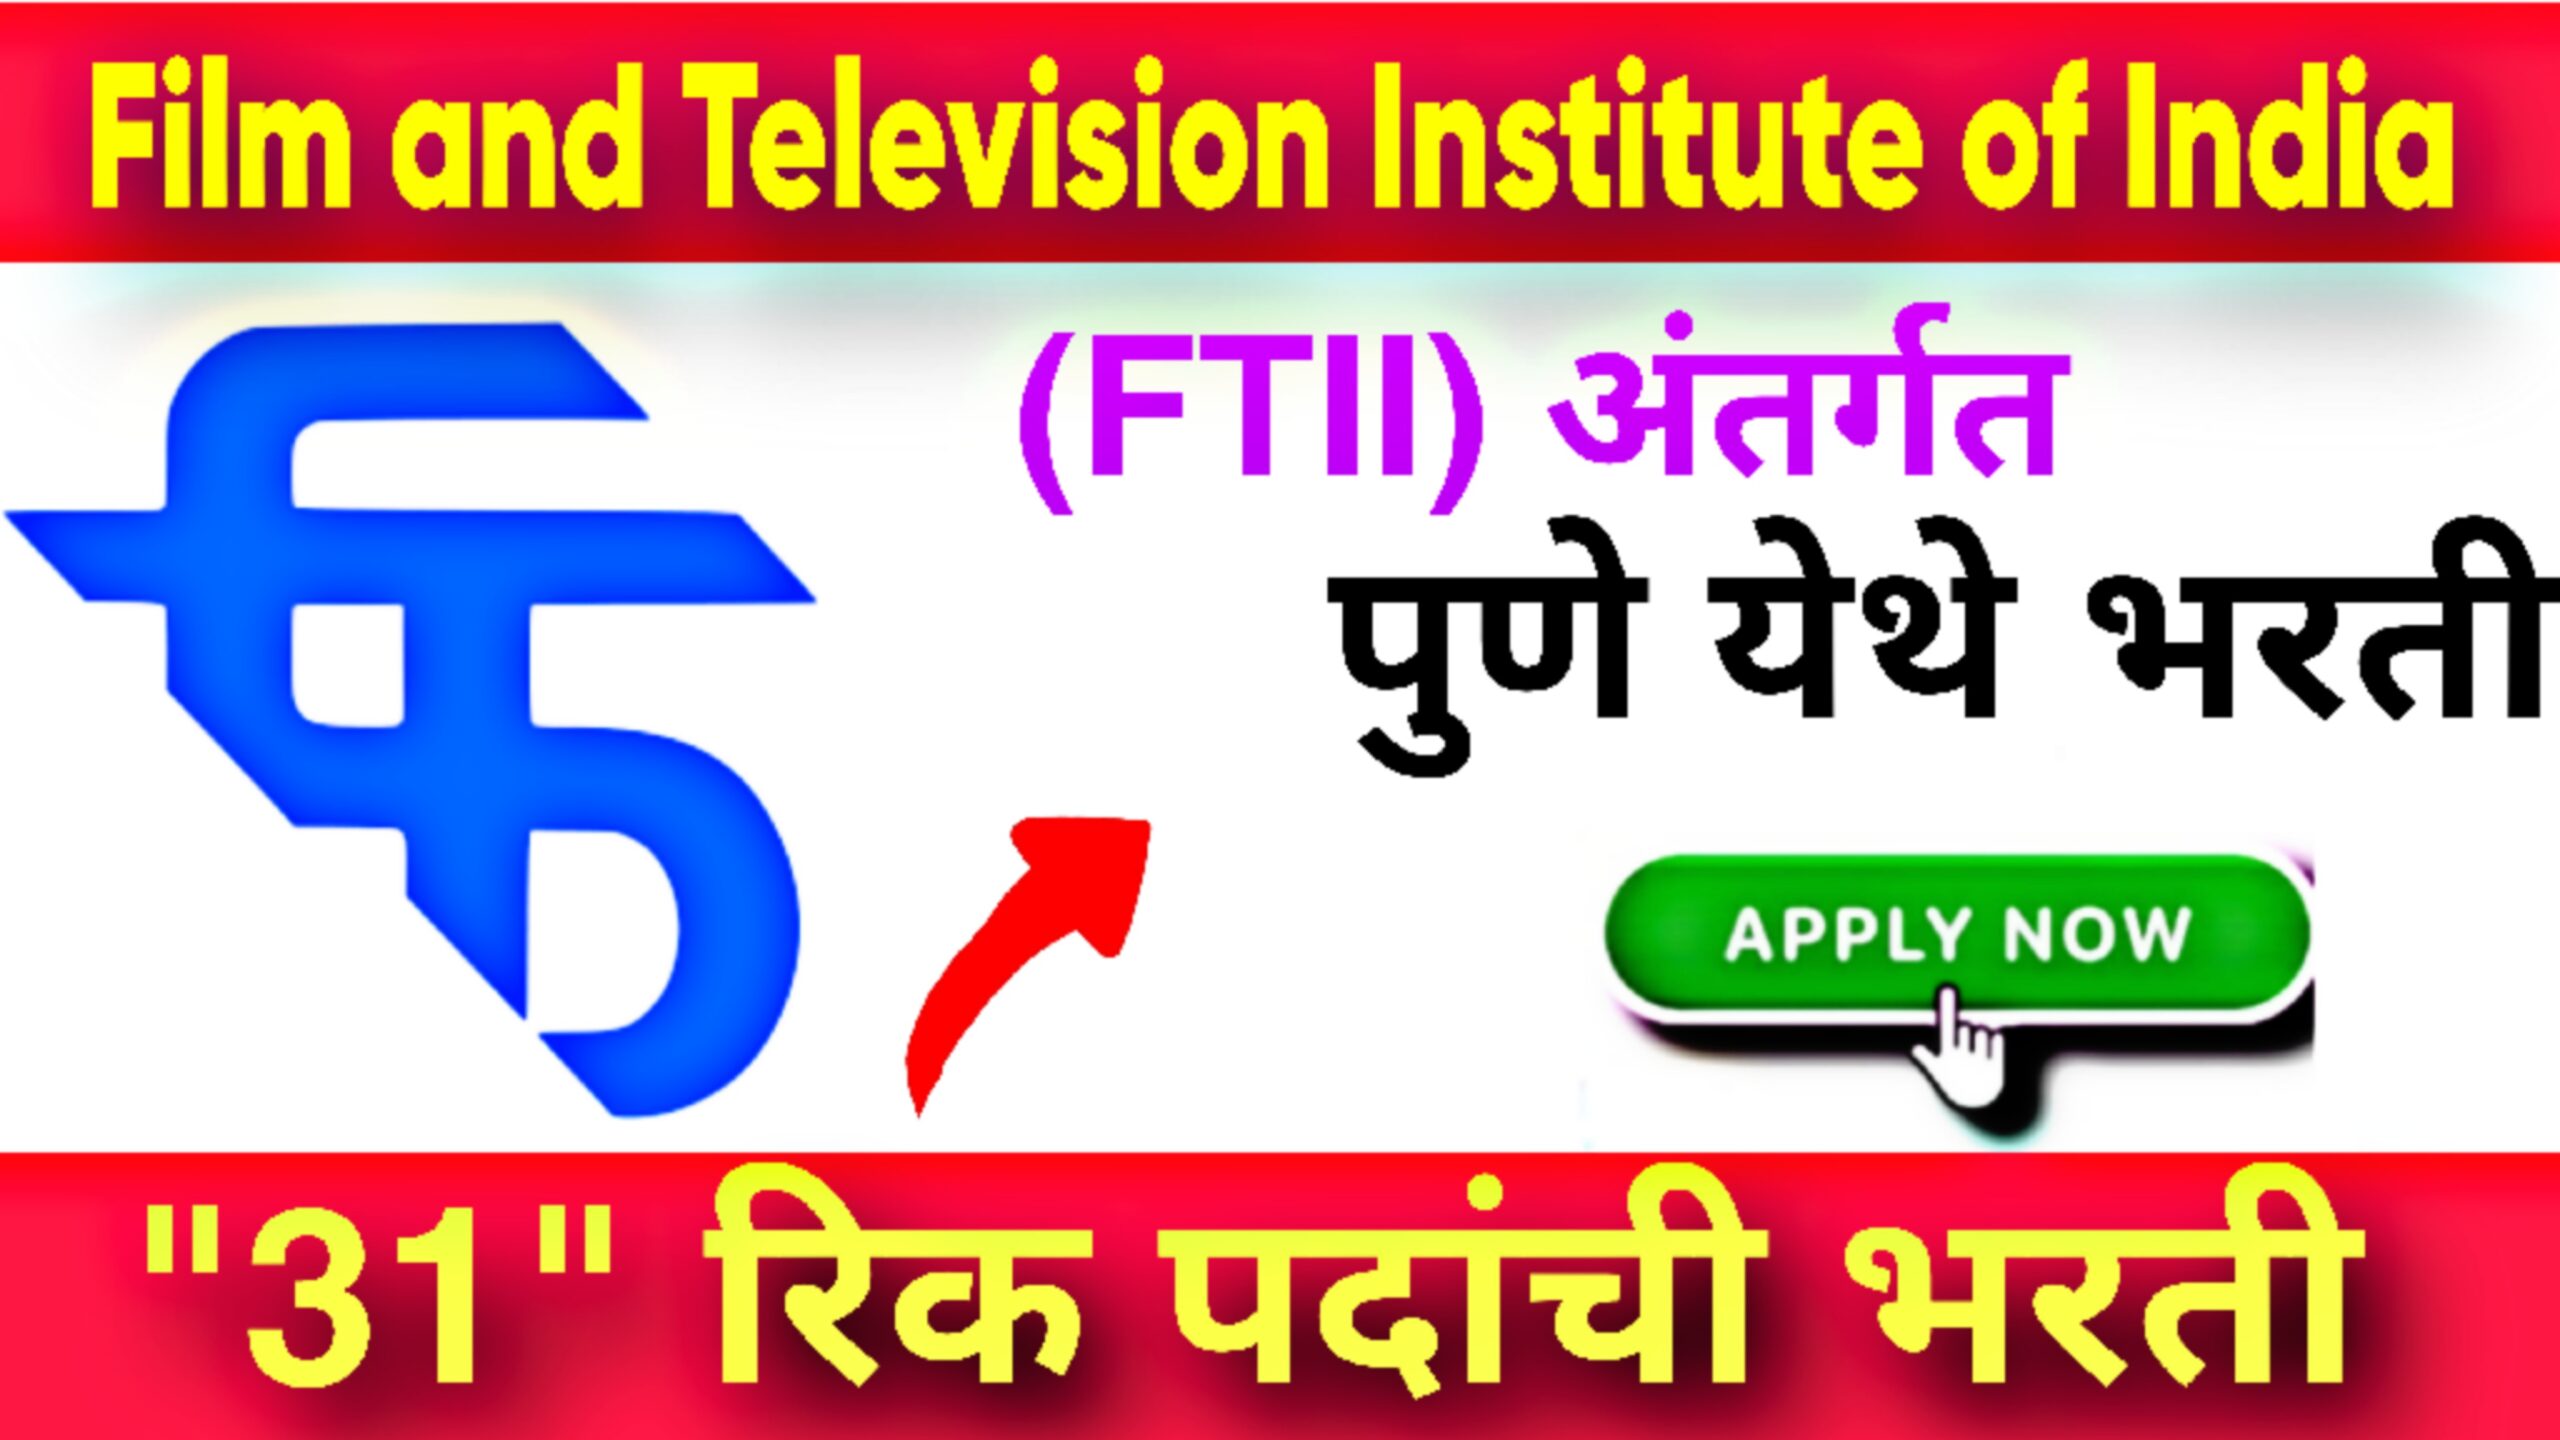 FILM AND TELEVISION INSTITUTE OF INDIA (FTII) Recruitment